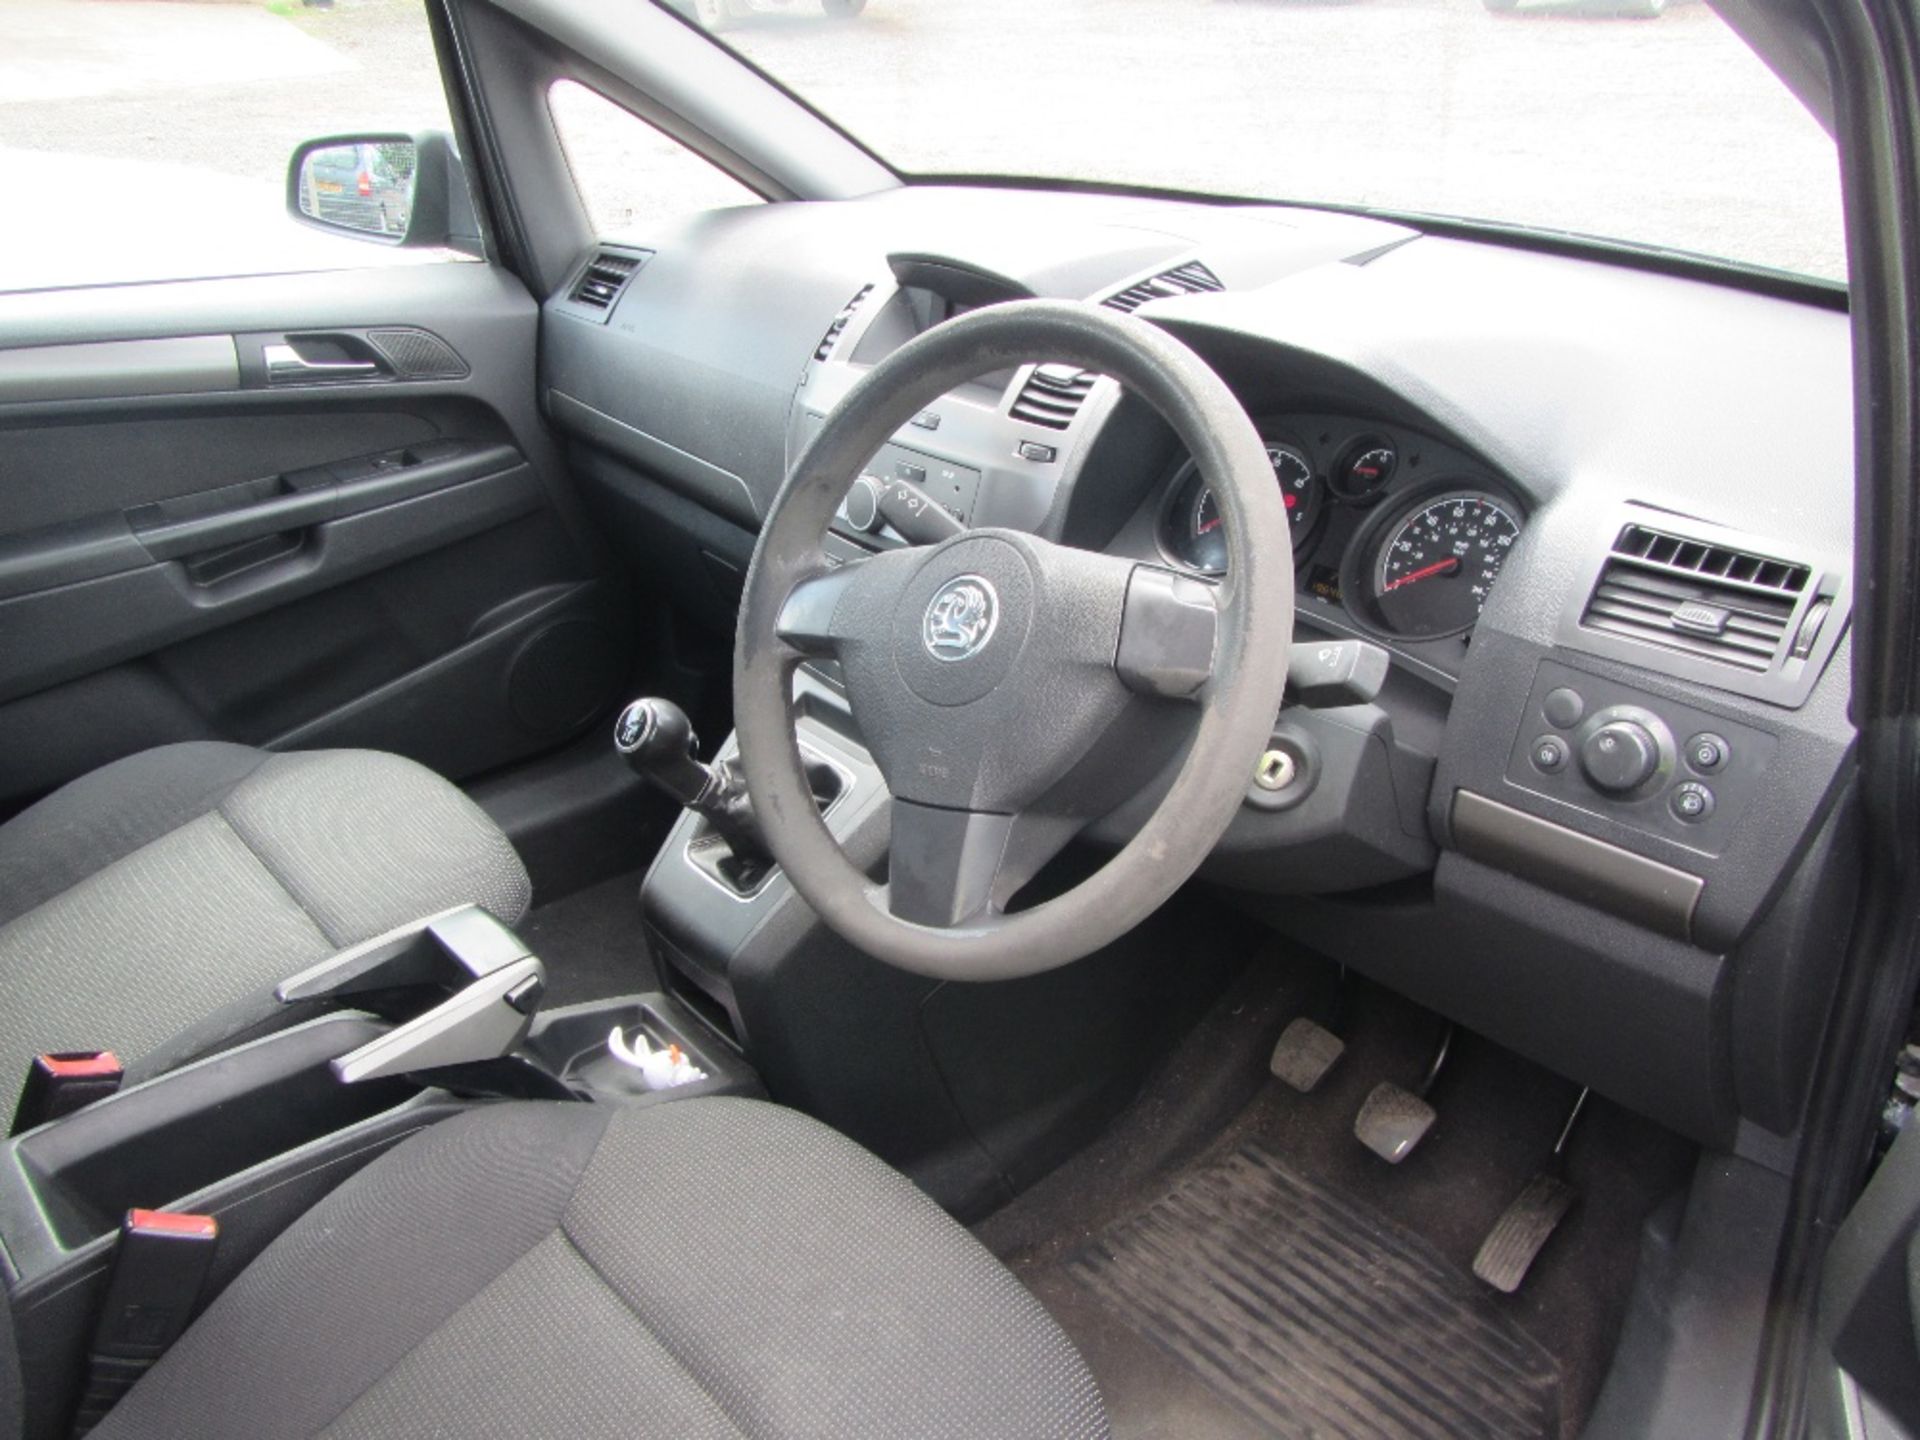 Vauxhall Zafira CDTI Diesel 1.9ltr c/w 6 speed gearbox, 7 seats & V5. Black Mileage: 196,485 MOT - Image 7 of 8